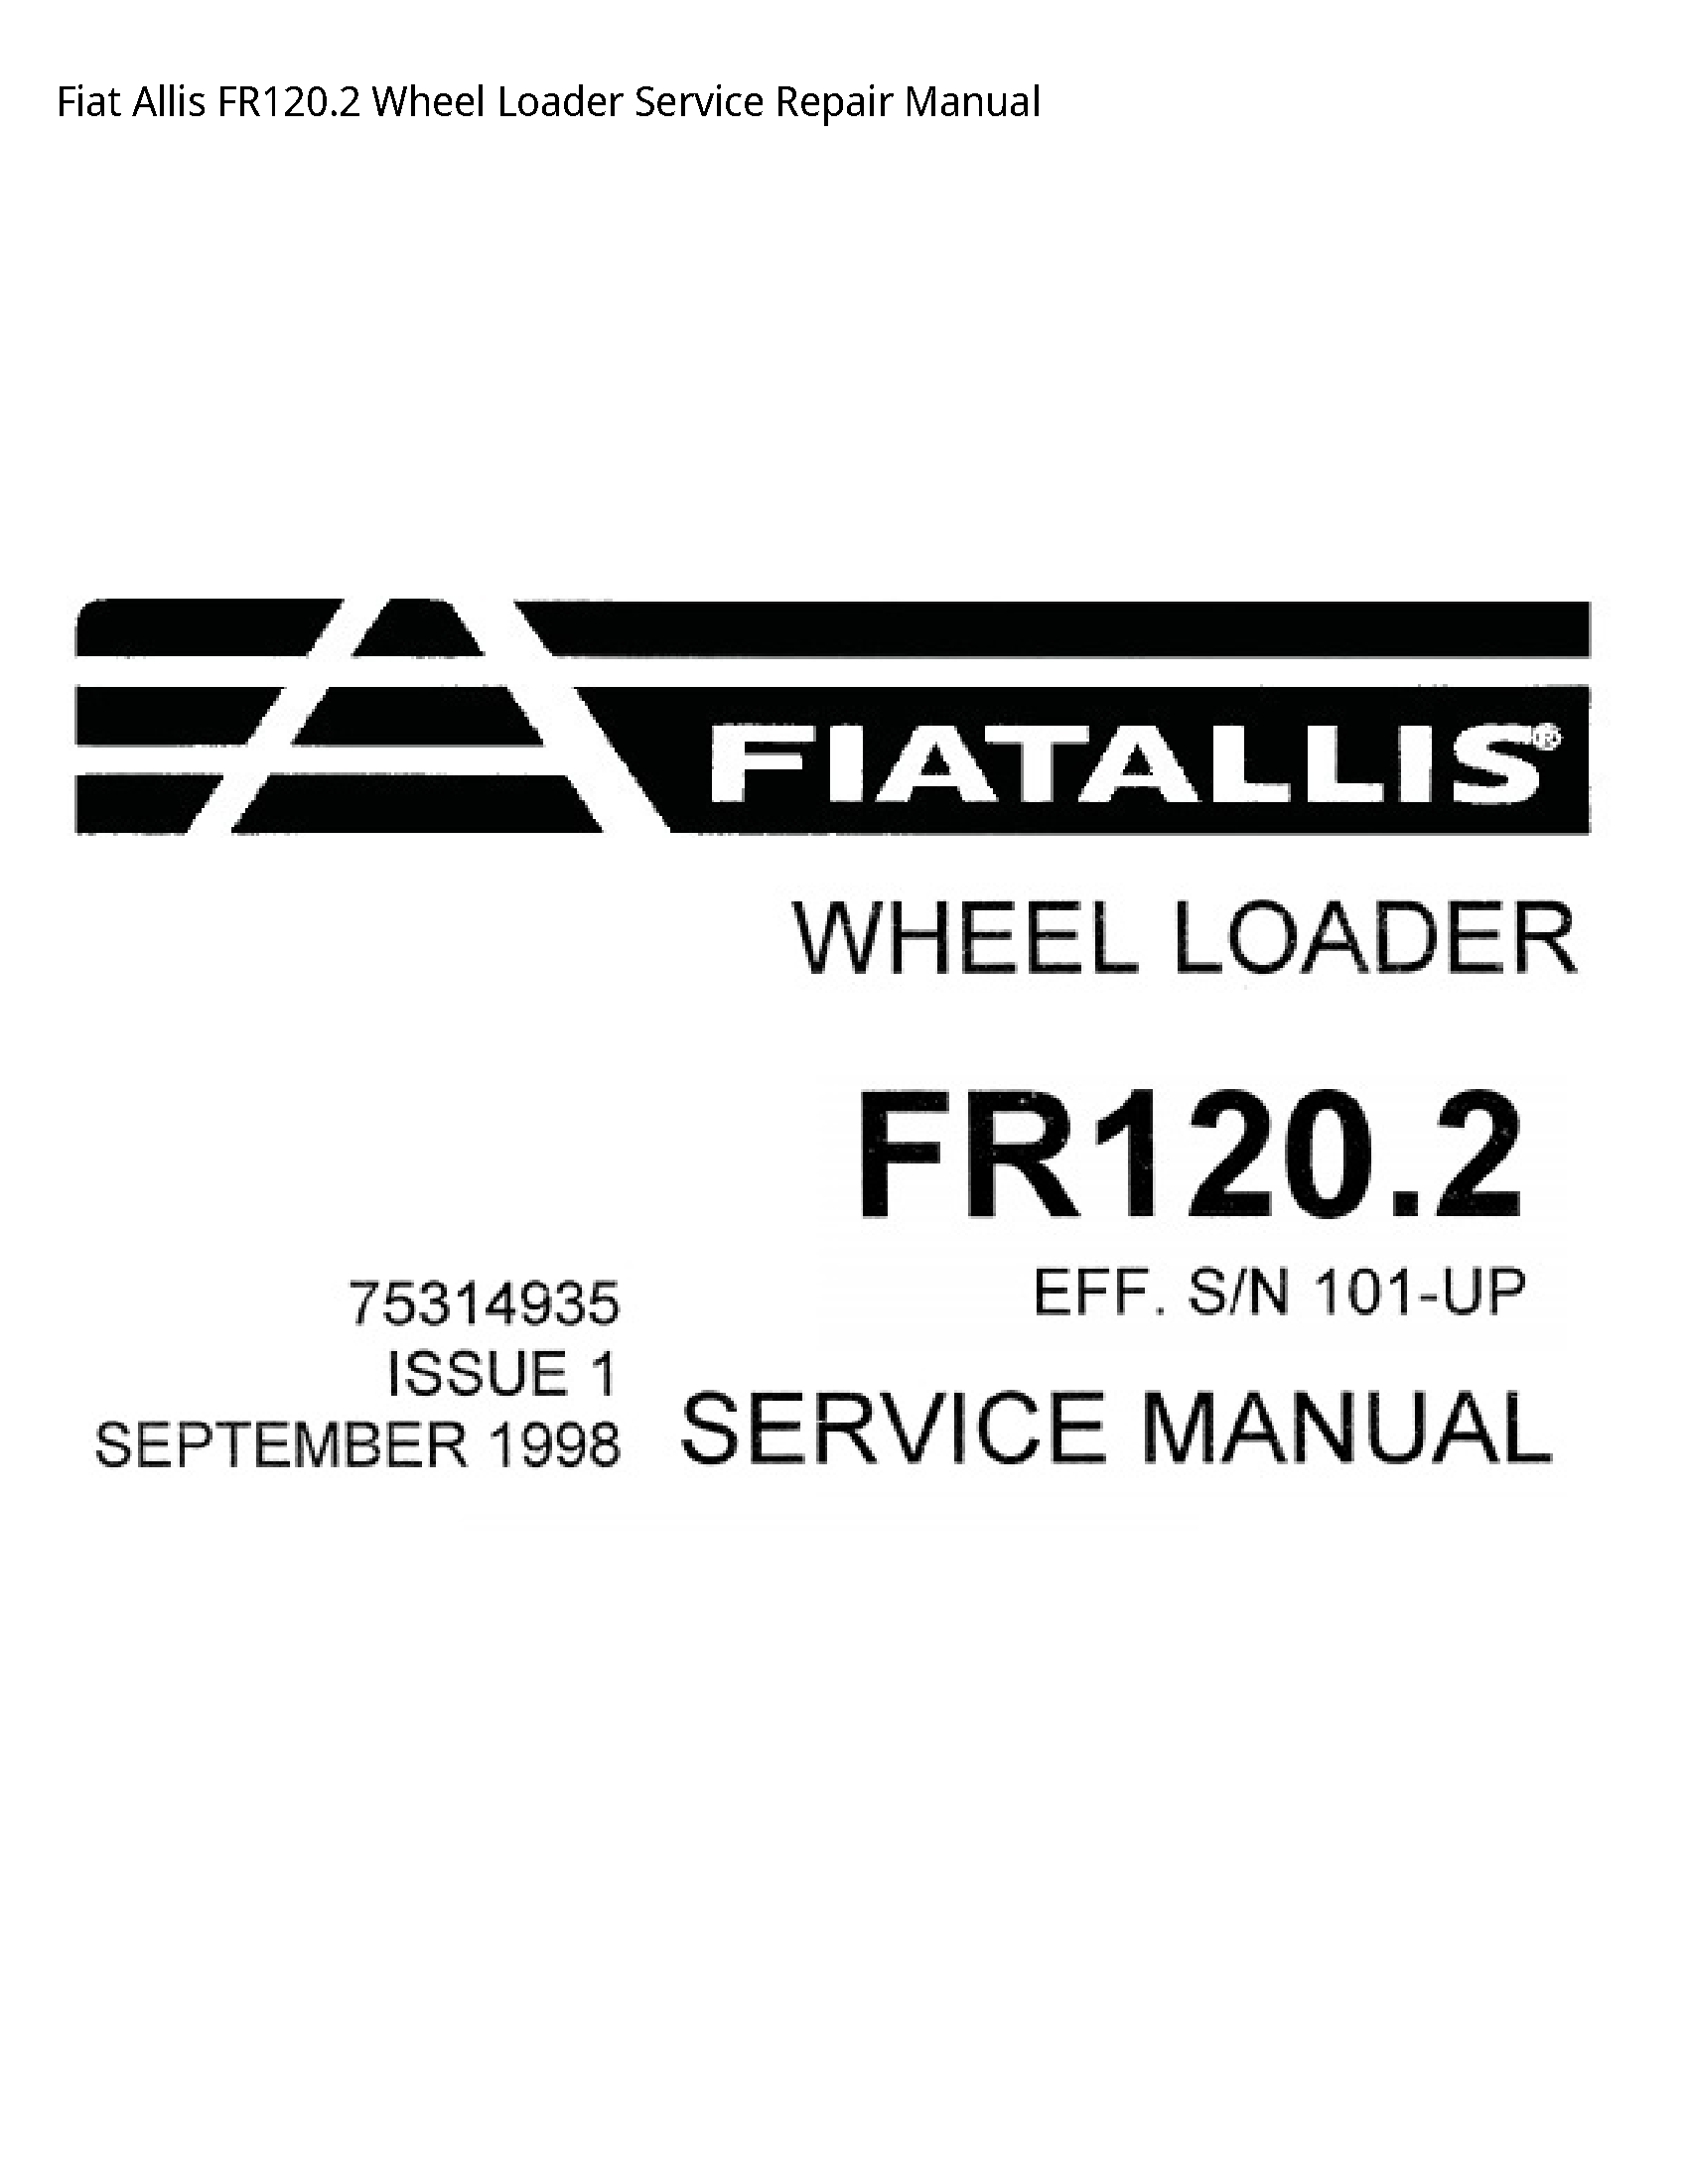 Fiat Allis FR120.2 Wheel Loader manual